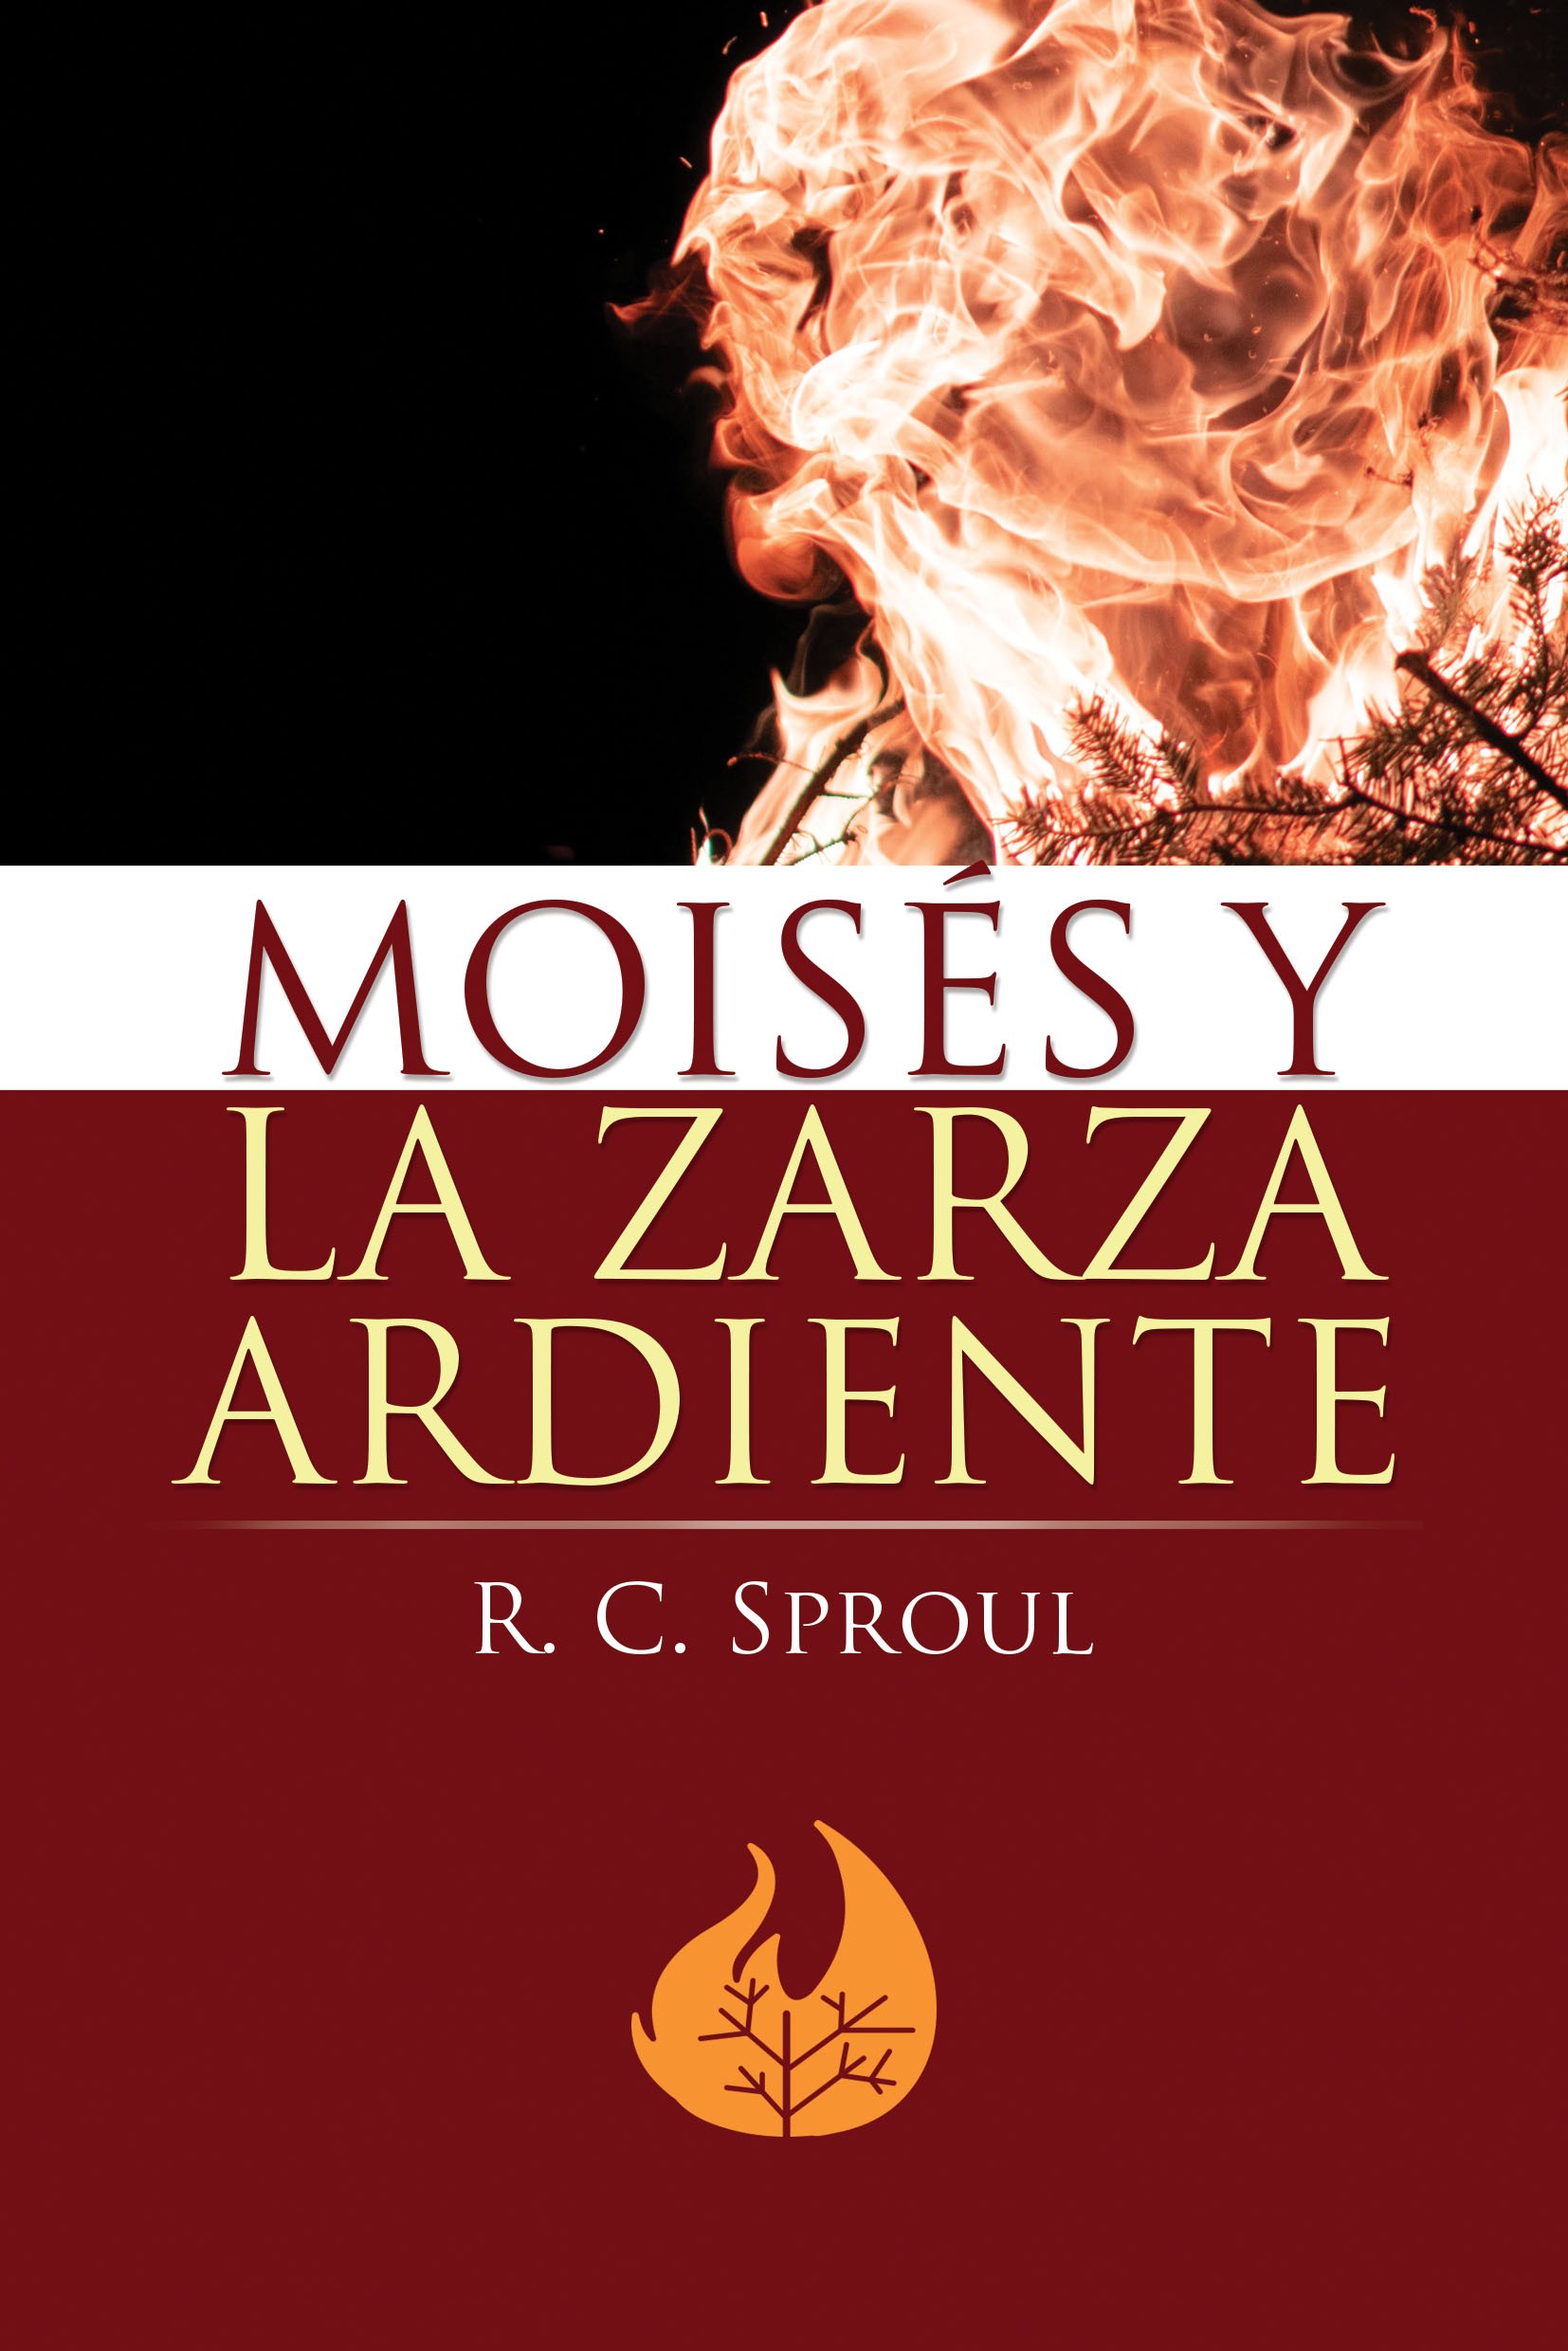 Moisés y la zarza ardiente